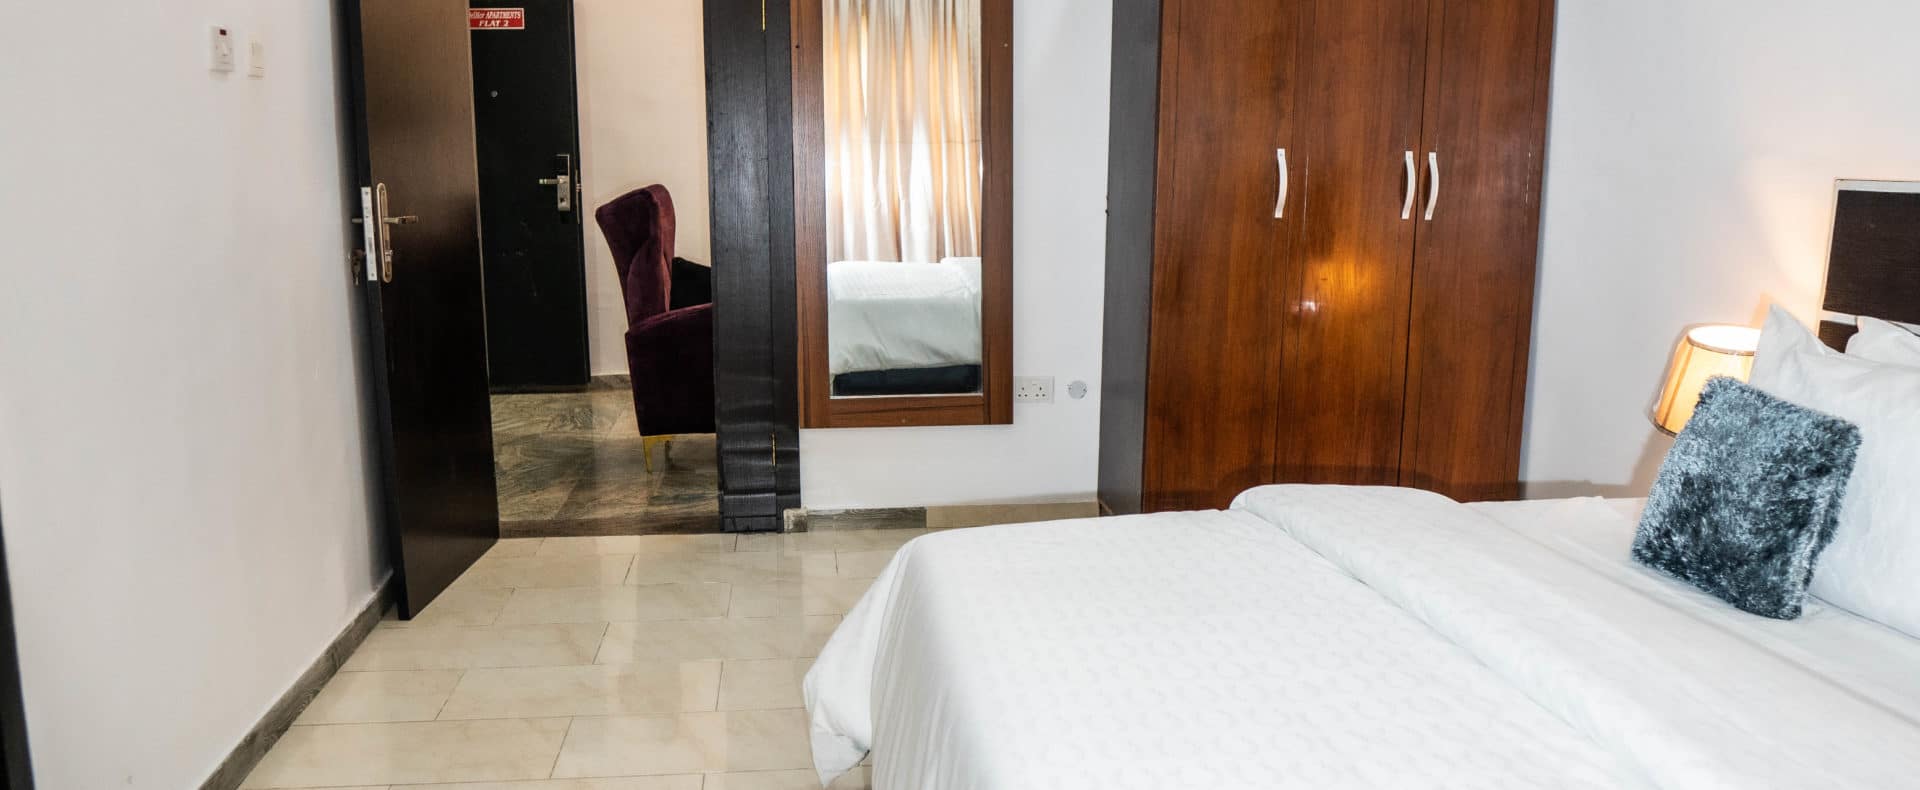 40 Bedroom Gold Premium Short Let In Lekki Lagos Nigeria